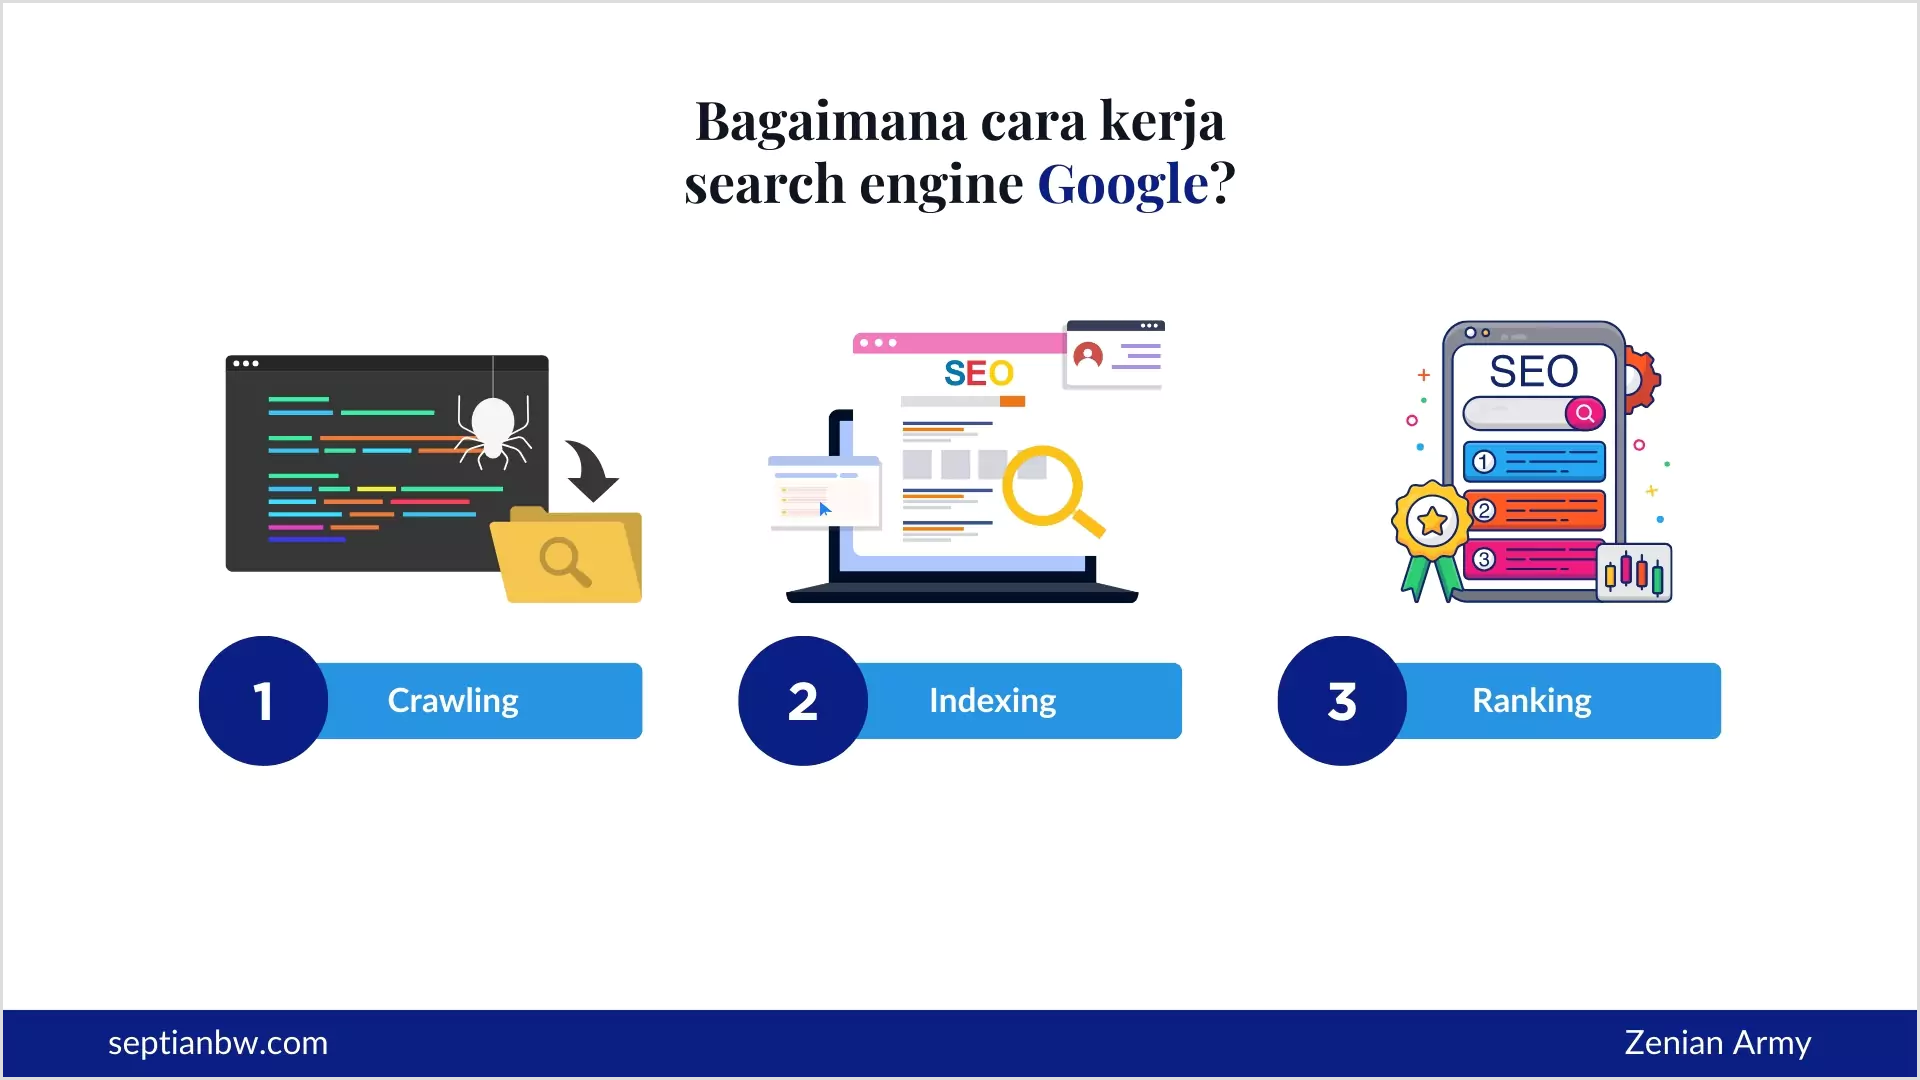 Cara kerja search engine Google